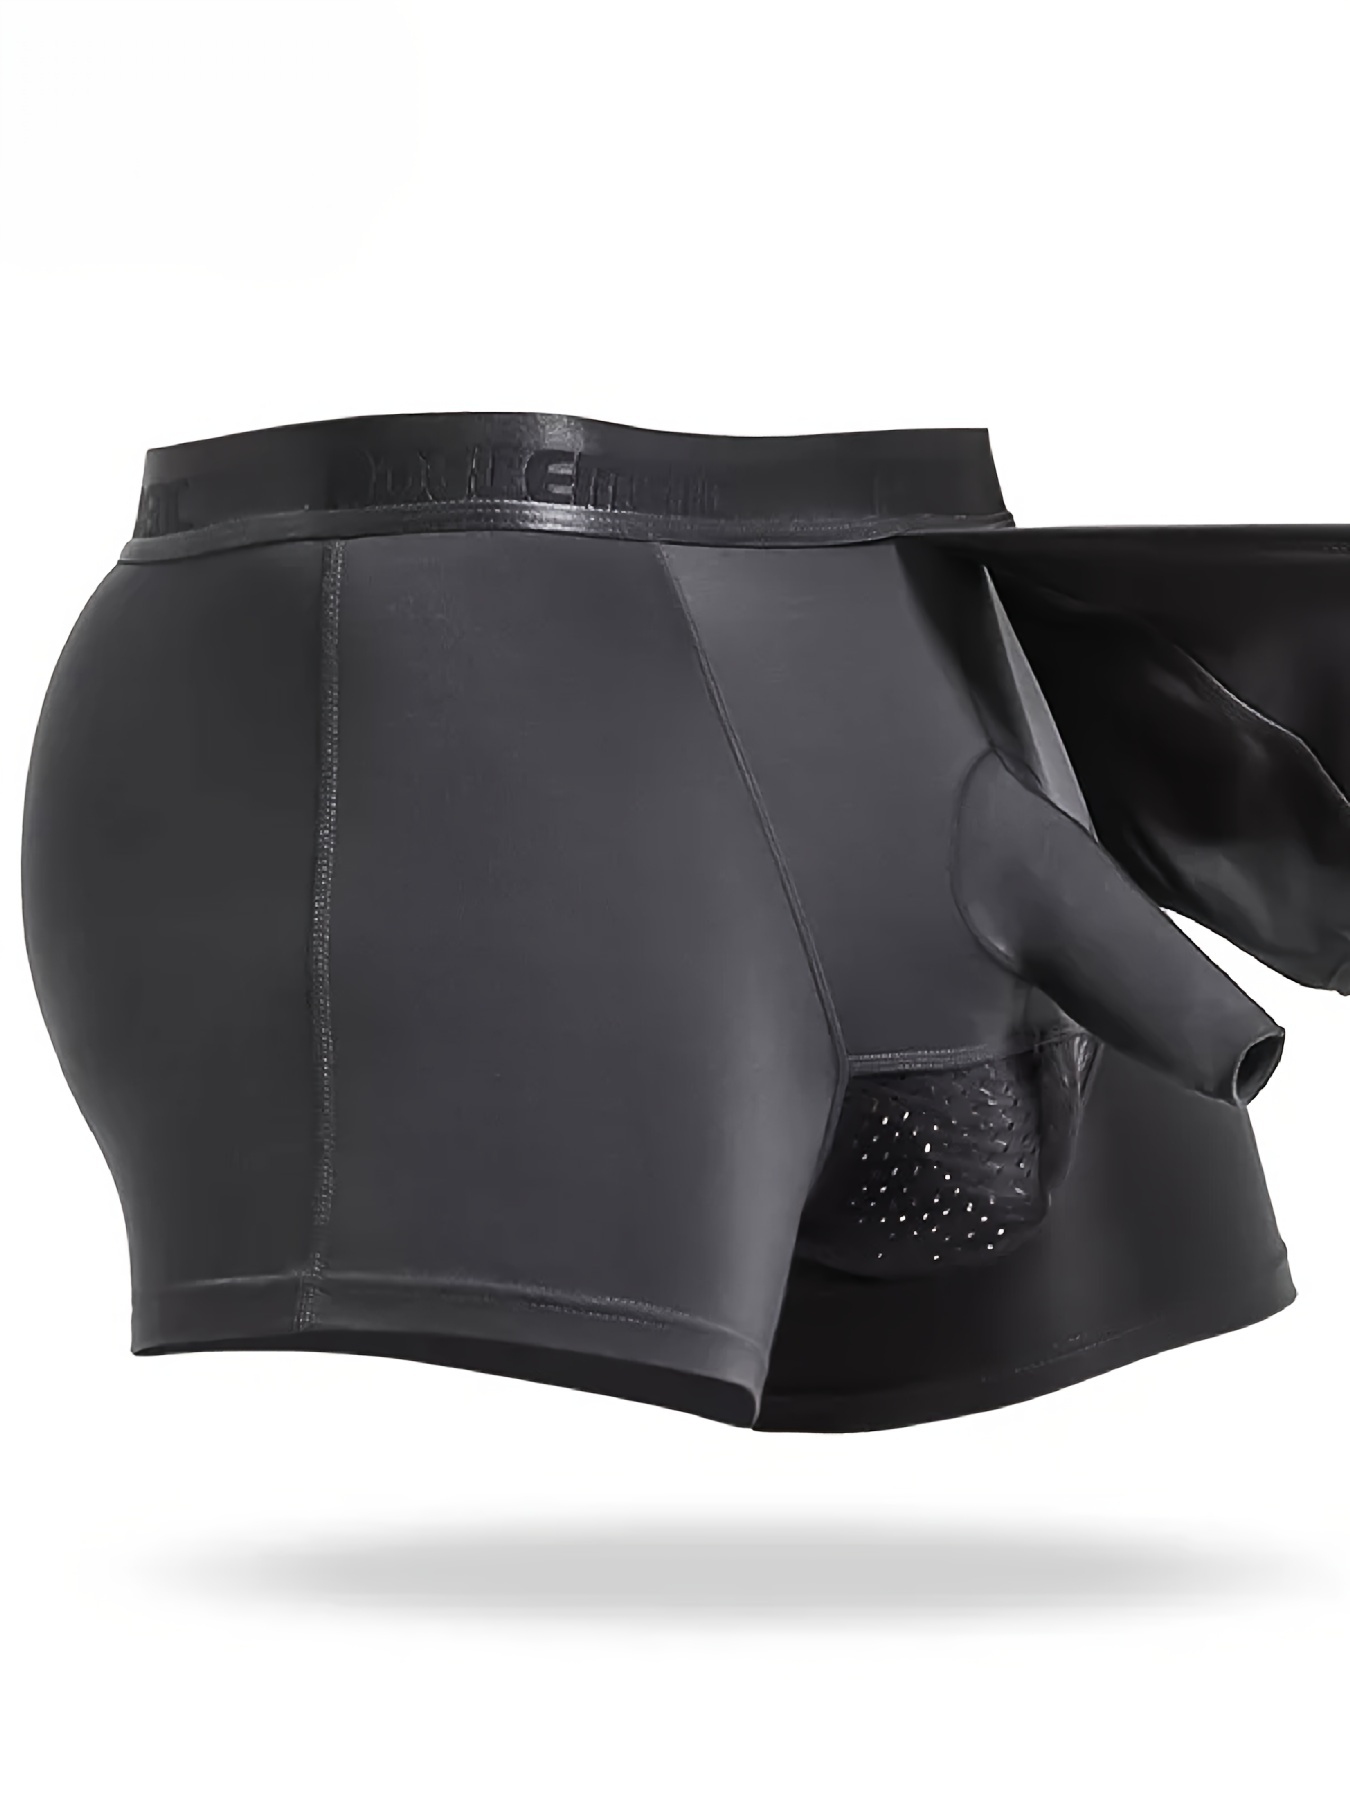 Buy Anbau Men Underwear Boxer Briefs Shorts Bulge Pouch Soft